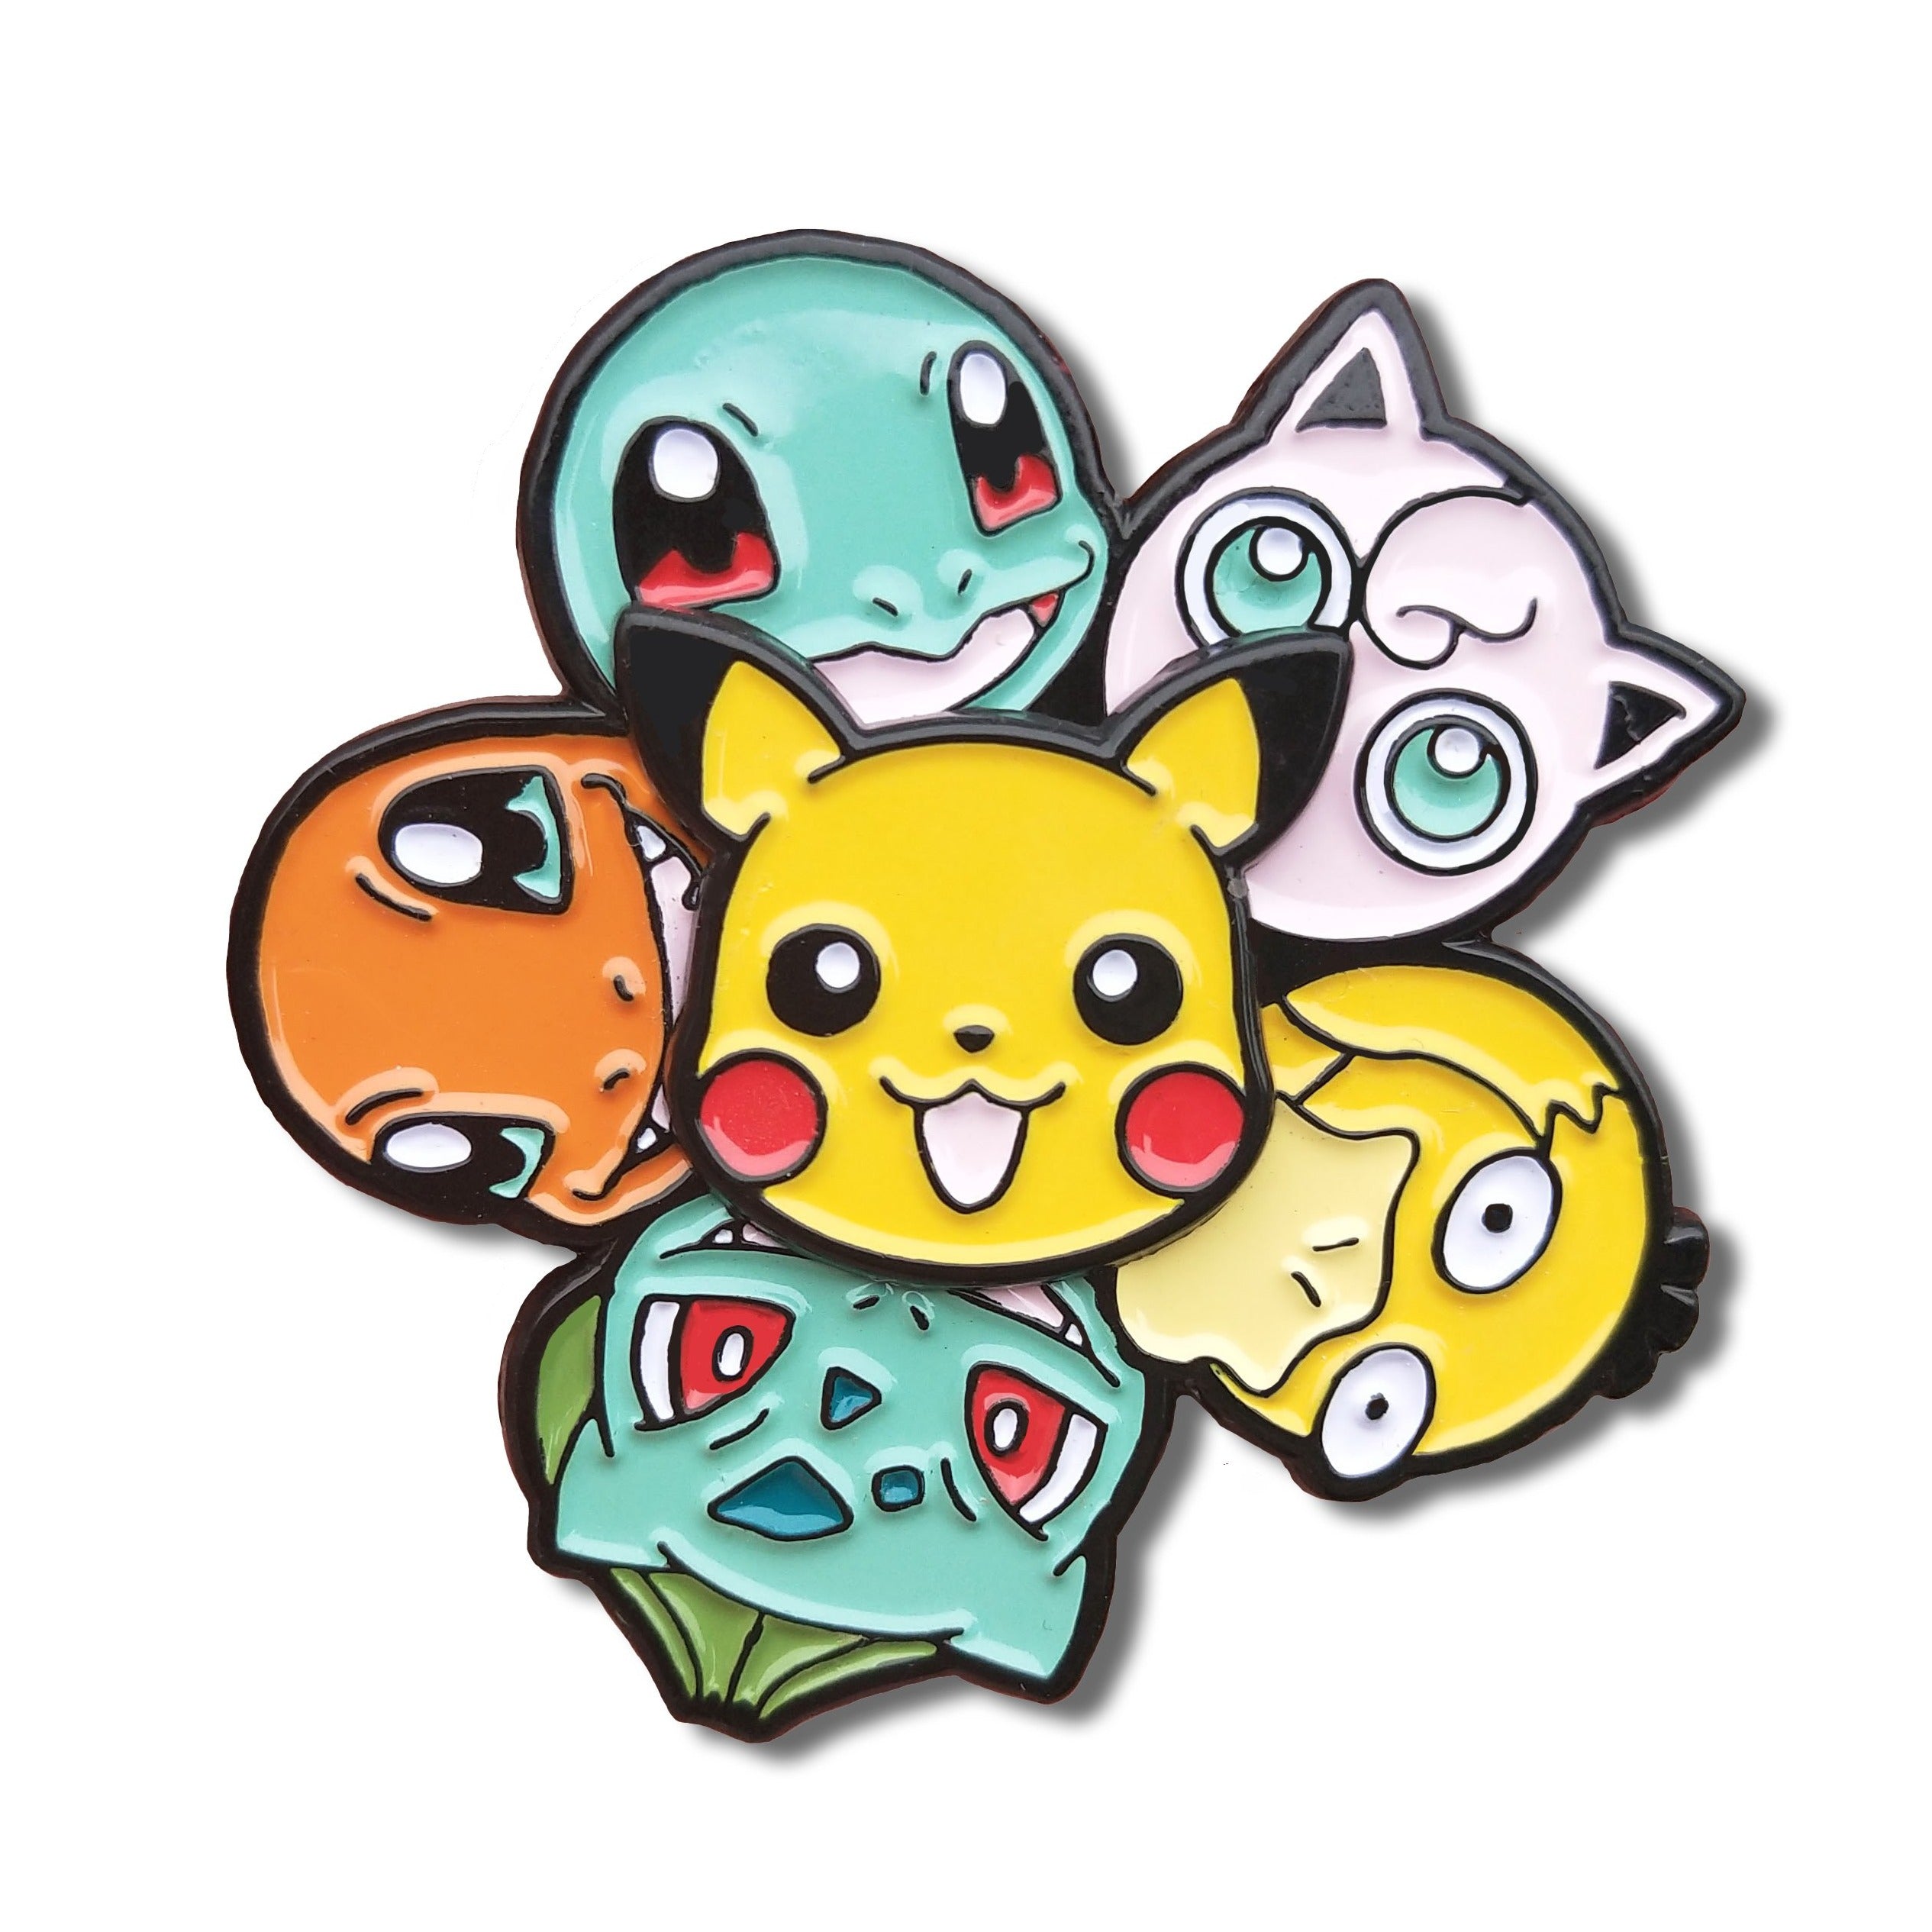 Aangepaste ontwerpen Leuke anime Pokemon Badge Animal Game Pokemon Pikachu Elaw Pin Go For Kids